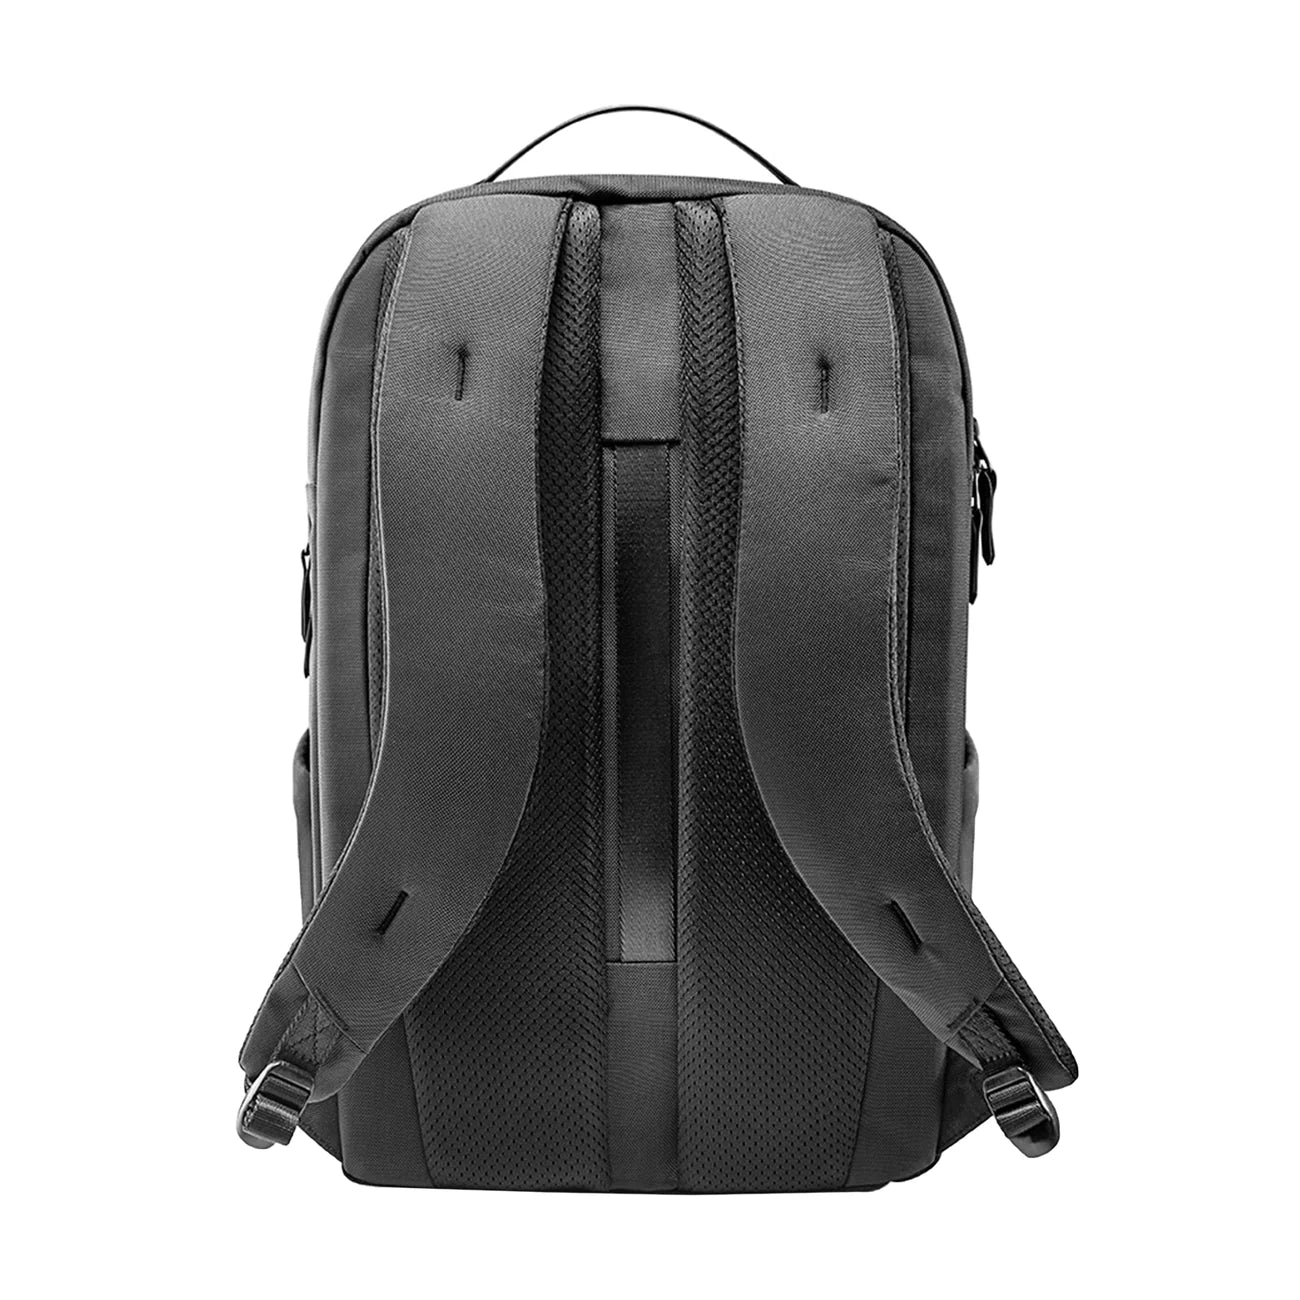 Navigator-H61 Laptop Backpack